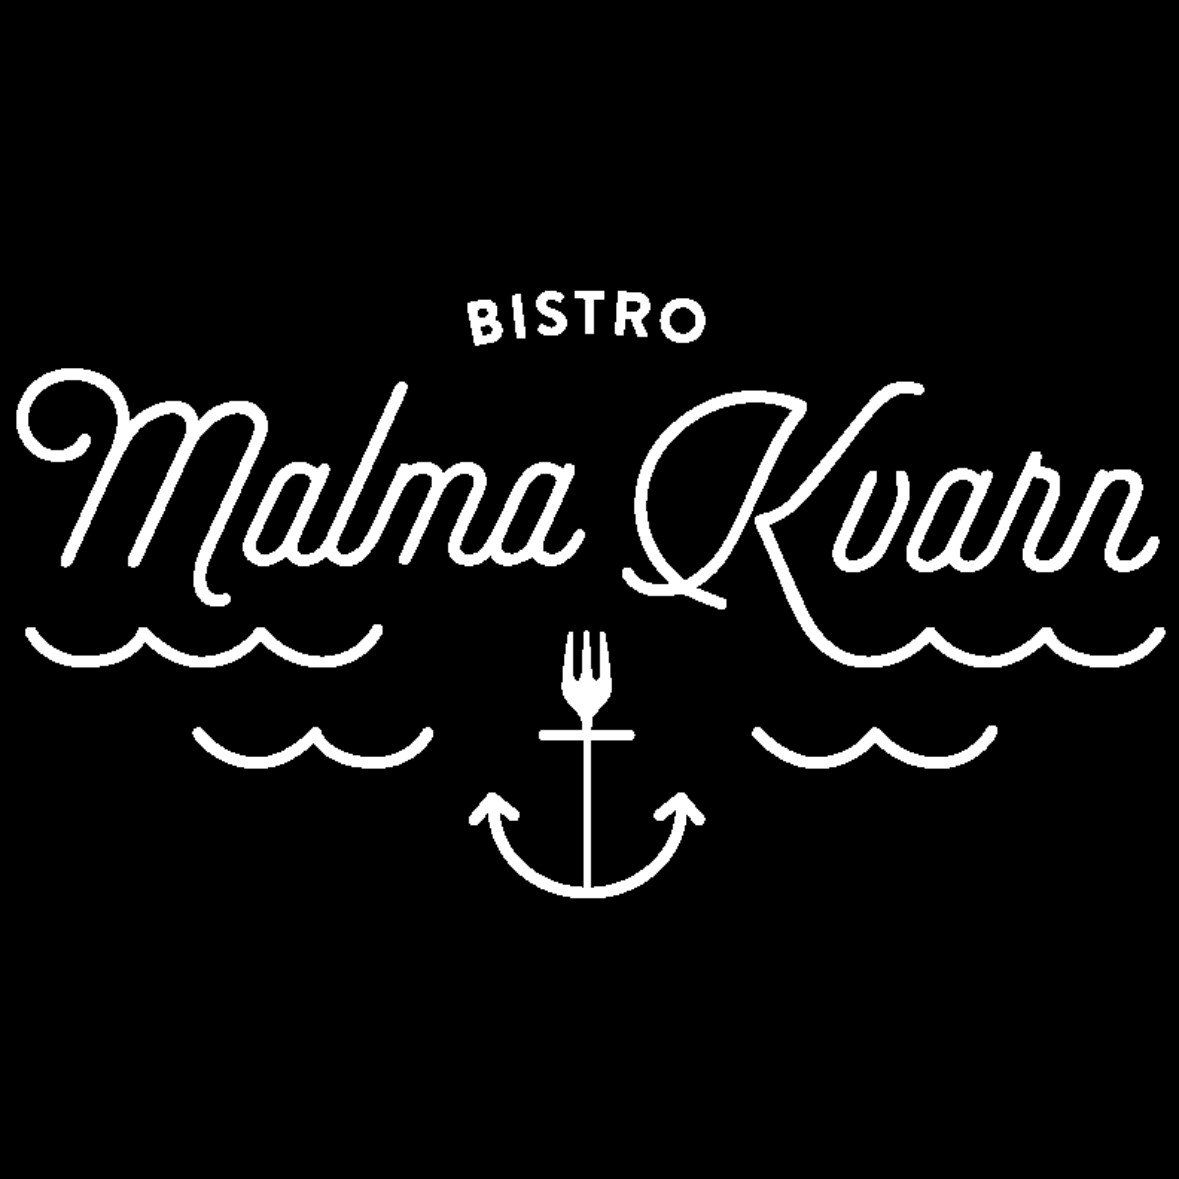 Bistro Malma Kvarn, logo